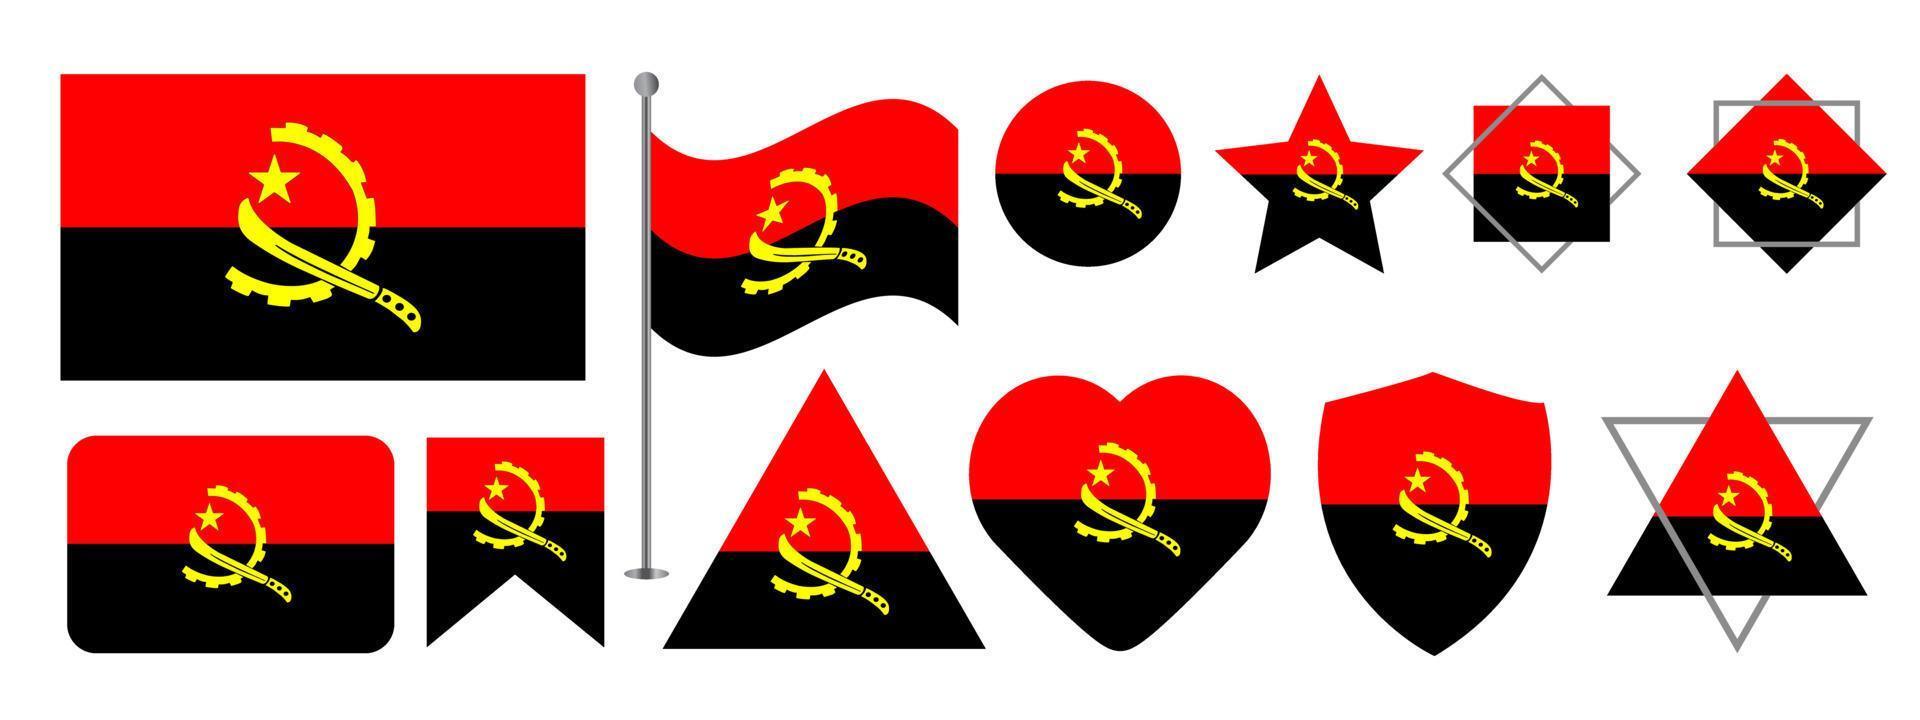 conception du drapeau angolais. ensemble de conception de vecteur de drapeau national angola. drapeau angola illustration vectorielle